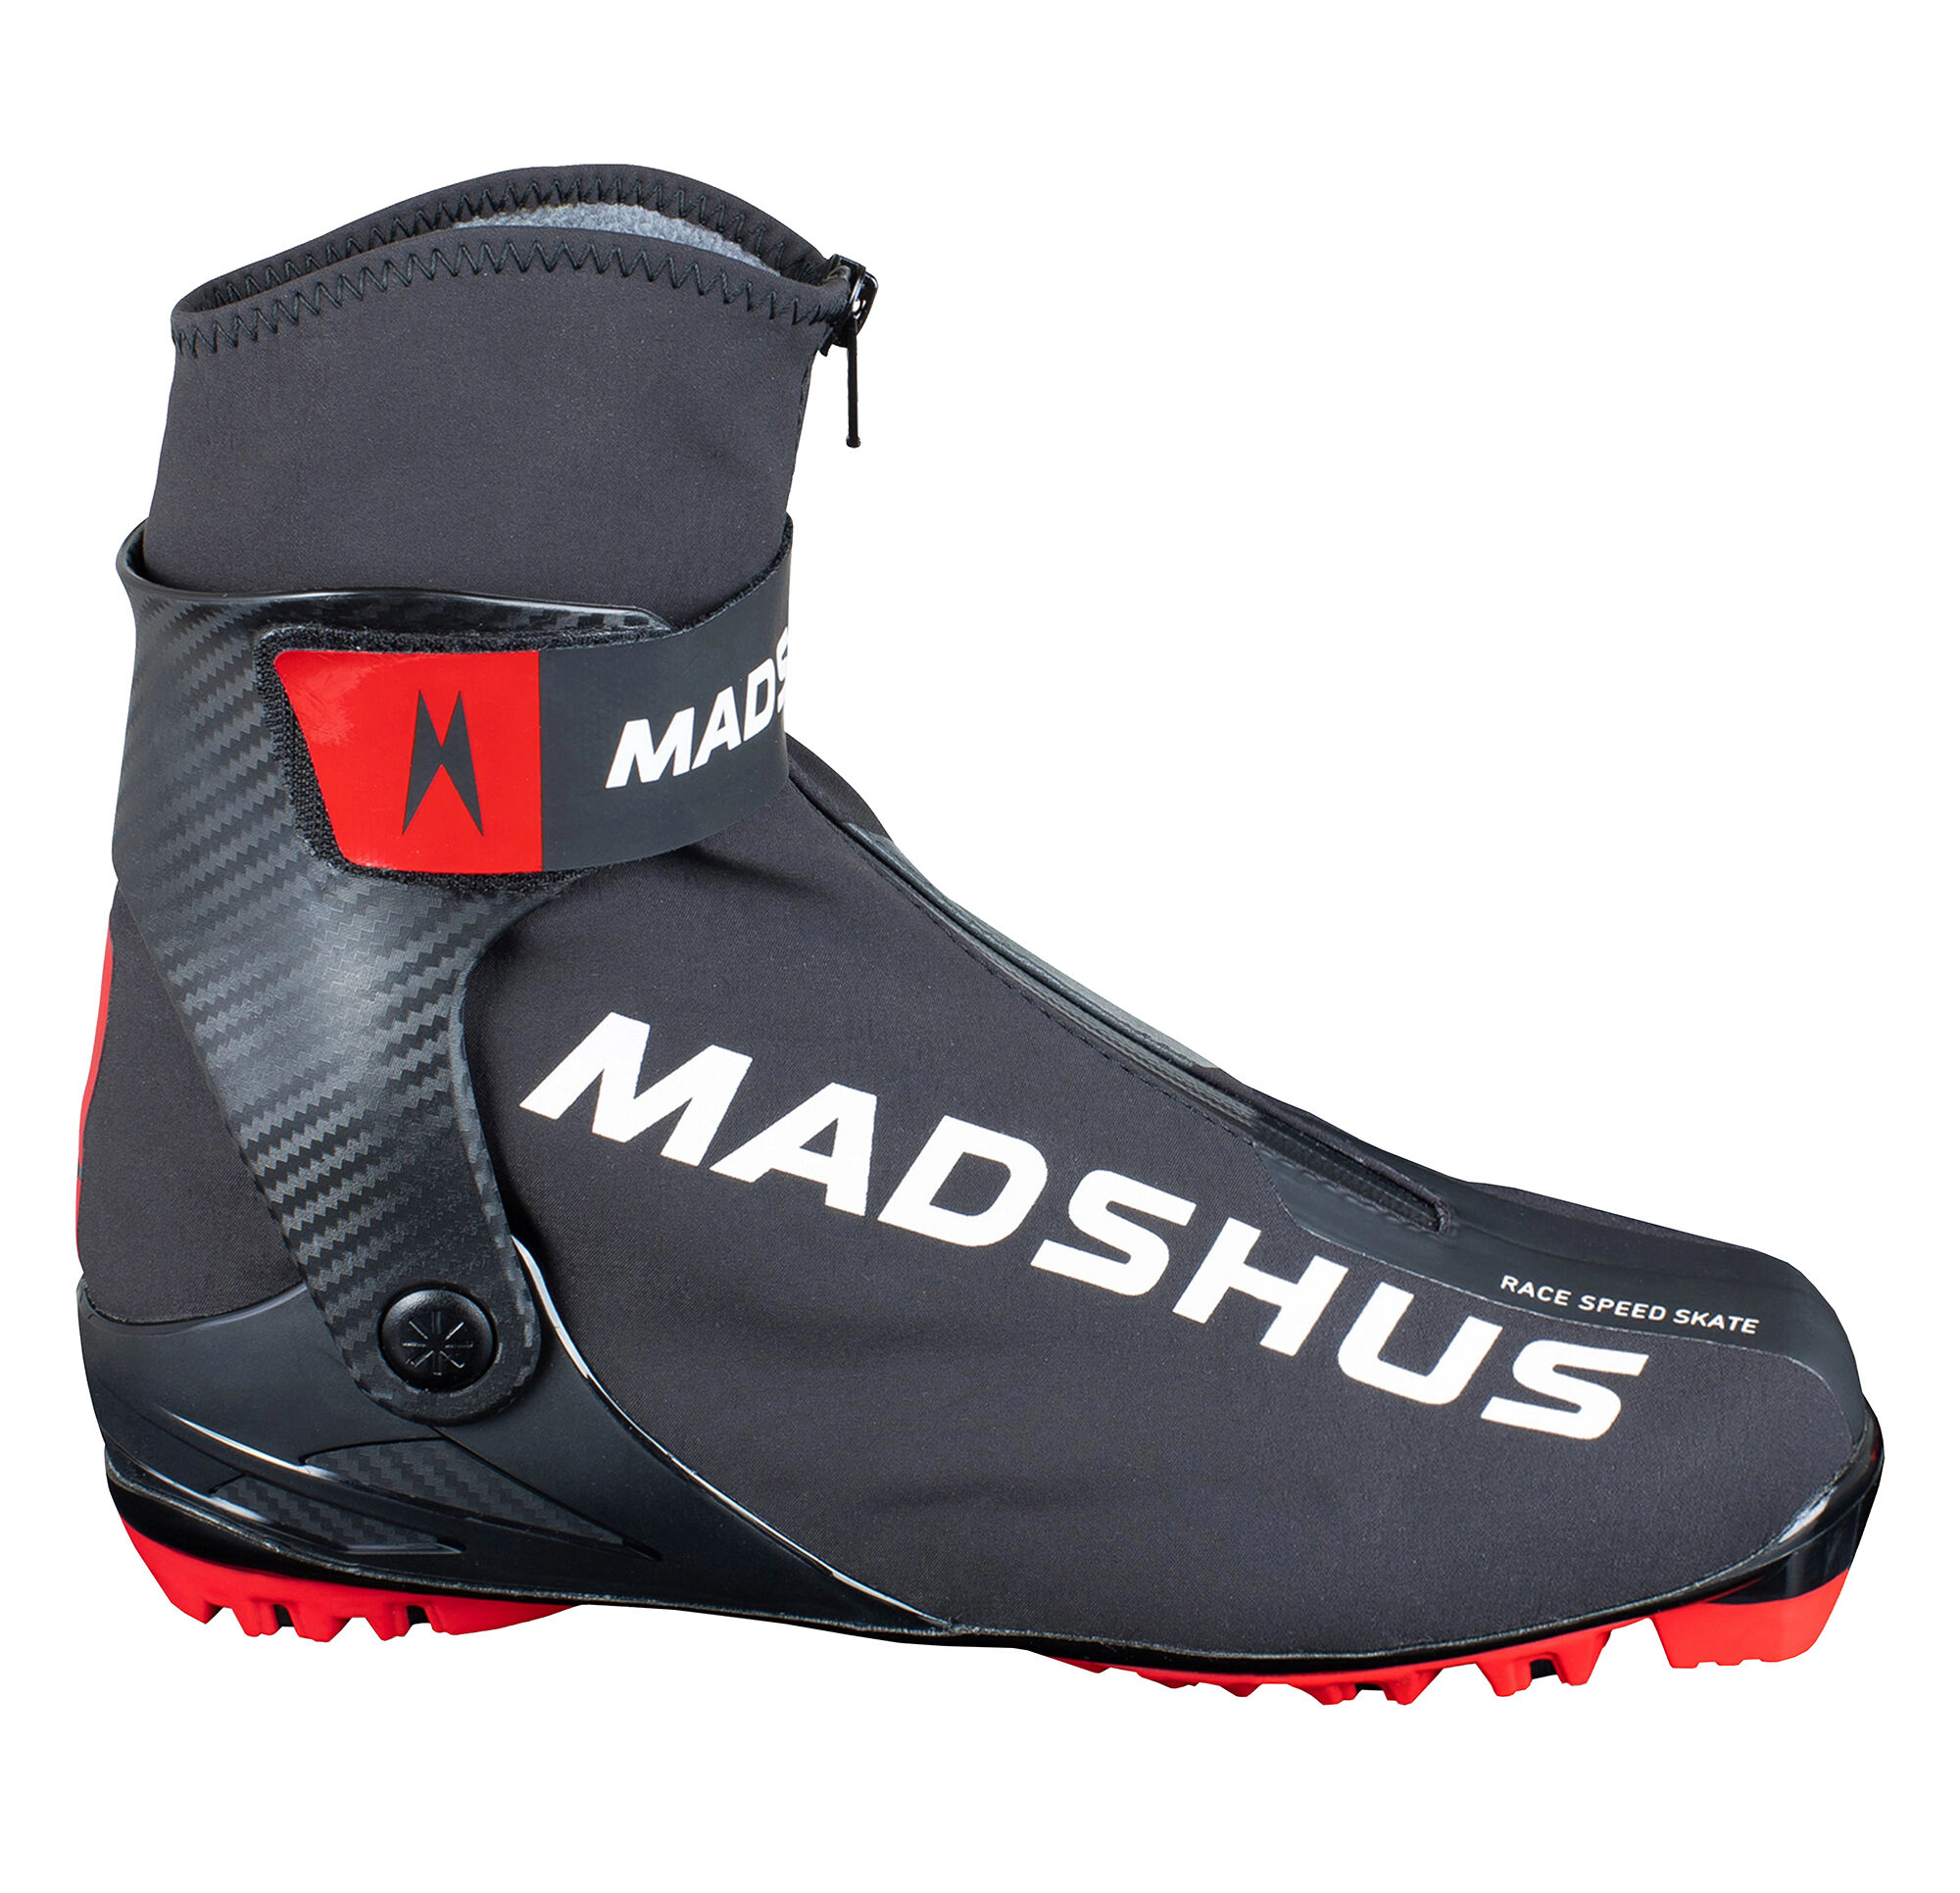 Madshus Race Speed Skate skisko 21/22 N21040050 41 2022